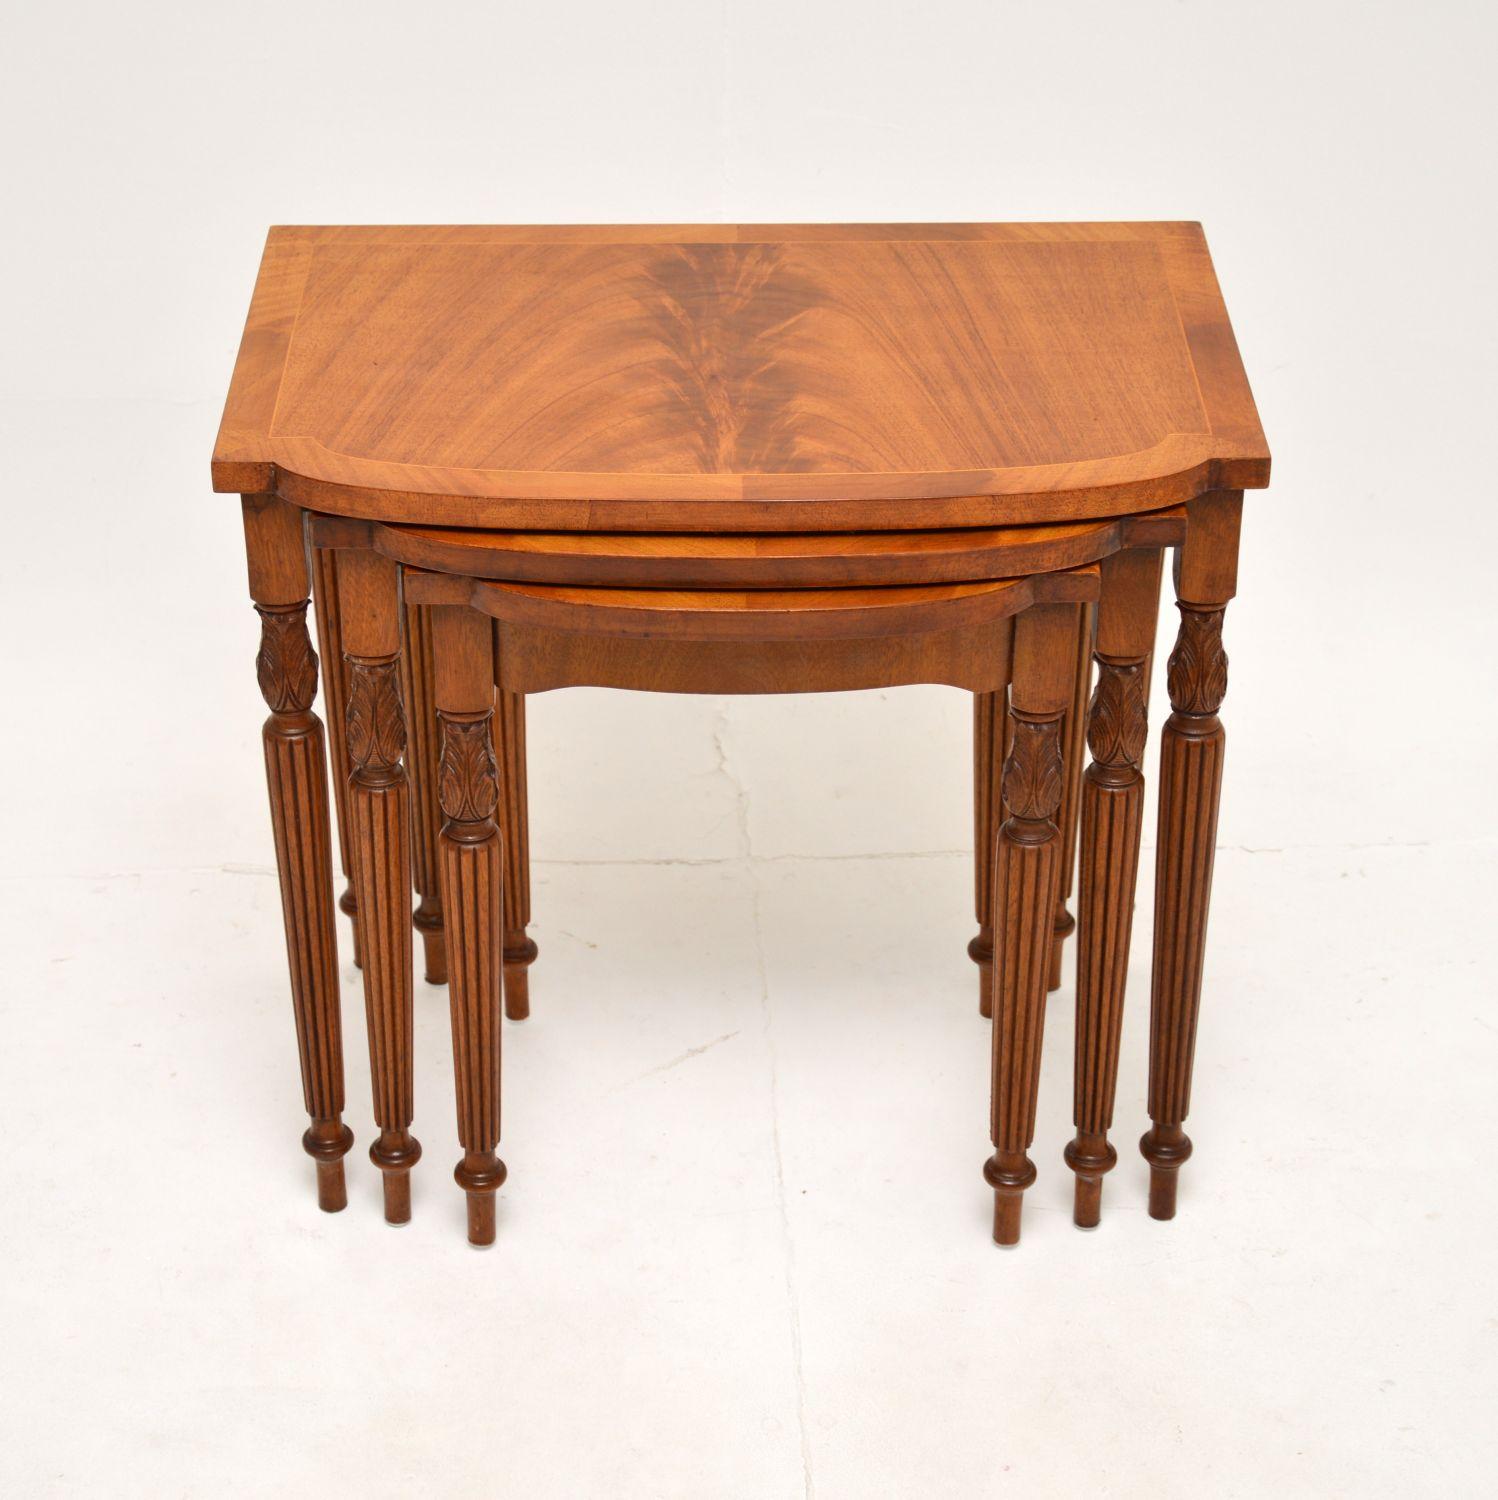 Un magnifique nid de trois tables anciennes marquetées. Fabriqués en Angleterre, ils datent des années 1950.

La qualité est superbe, les plateaux sont magnifiques avec des bords à bandes croisées et reposent sur des pieds finement cannelés avec des